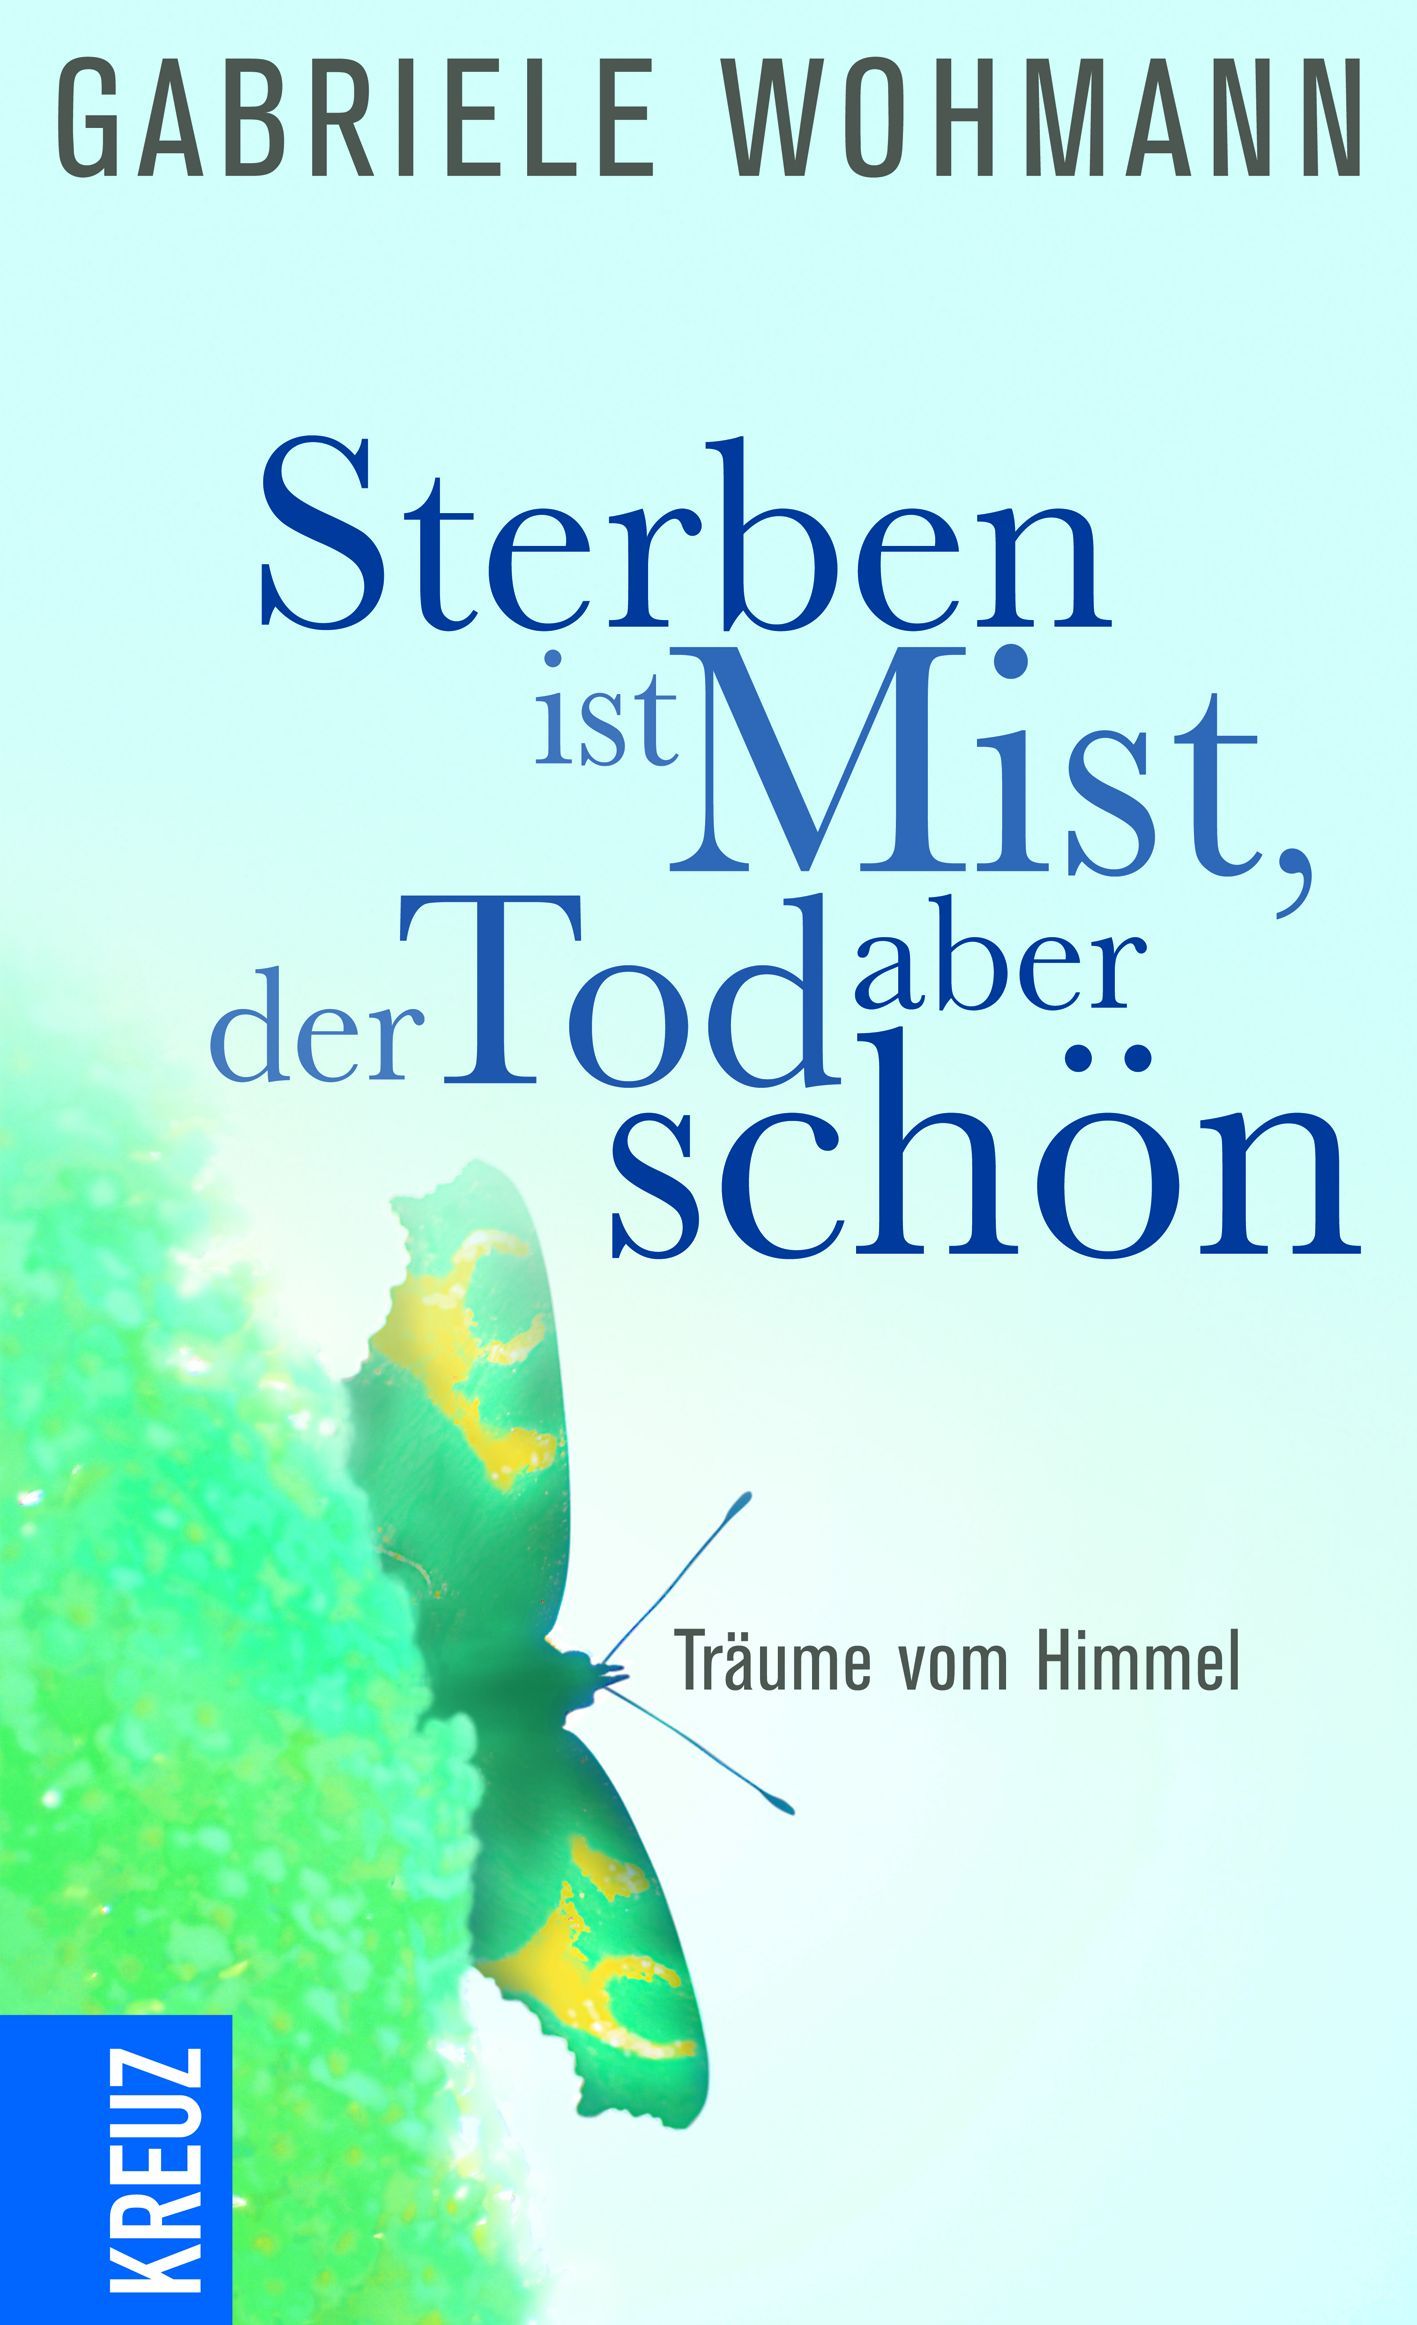 Cover des Buches "Sterben ist Mist, der Tod aber schön" von Georg Magirius und Gabriele Wohmann